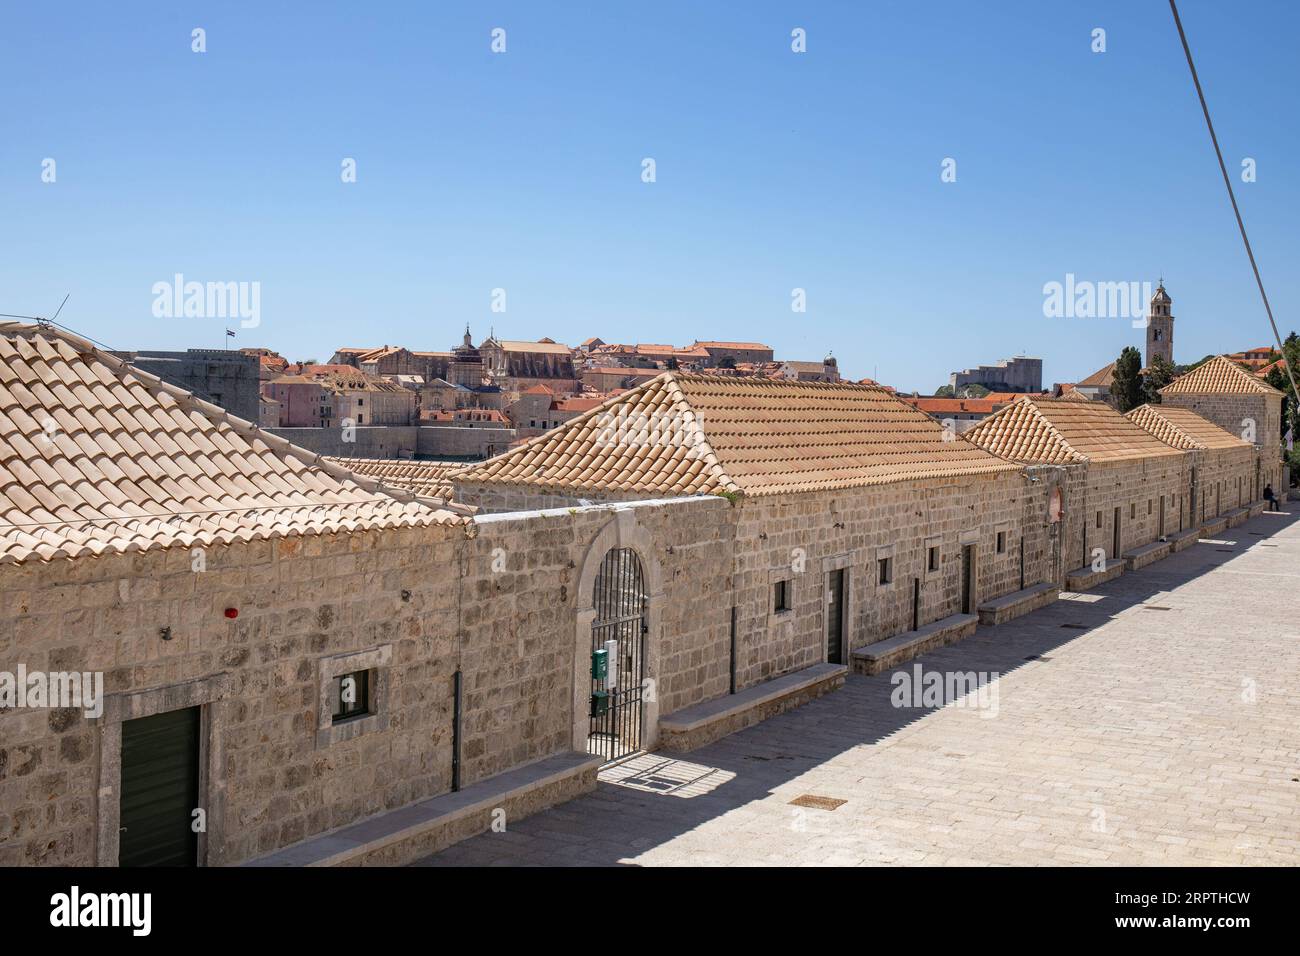 200415 -- DUBROVNIK KROATIEN, 15. April 2020 -- Foto aufgenommen am 15. April 2020 zeigt den Lazzarettos Komplex, eine mittelalterliche Quarantäneeinrichtung, die im 16. Jahrhundert erbaut wurde und derzeit ein Ort der Erholung, des Handels und der Unterhaltung in Dubrovnik, Kroatien. Der kroatische Innenminister davor Bozinovic sagte am Mittwoch, dass Kroatien die COVID-19-Lockdown verlängern werde, die am Sonntag ausläuft. Nach den jüngsten Zahlen, die am Mittwochnachmittag auf dem täglichen Pressebriefing zur Epidemie vorgelegt wurden, gibt es derzeit 1.741 COVID-19-Fälle in Kroatien. Bis jetzt sind 33 Menschen an der Krankheit gestorben, wog Stockfoto